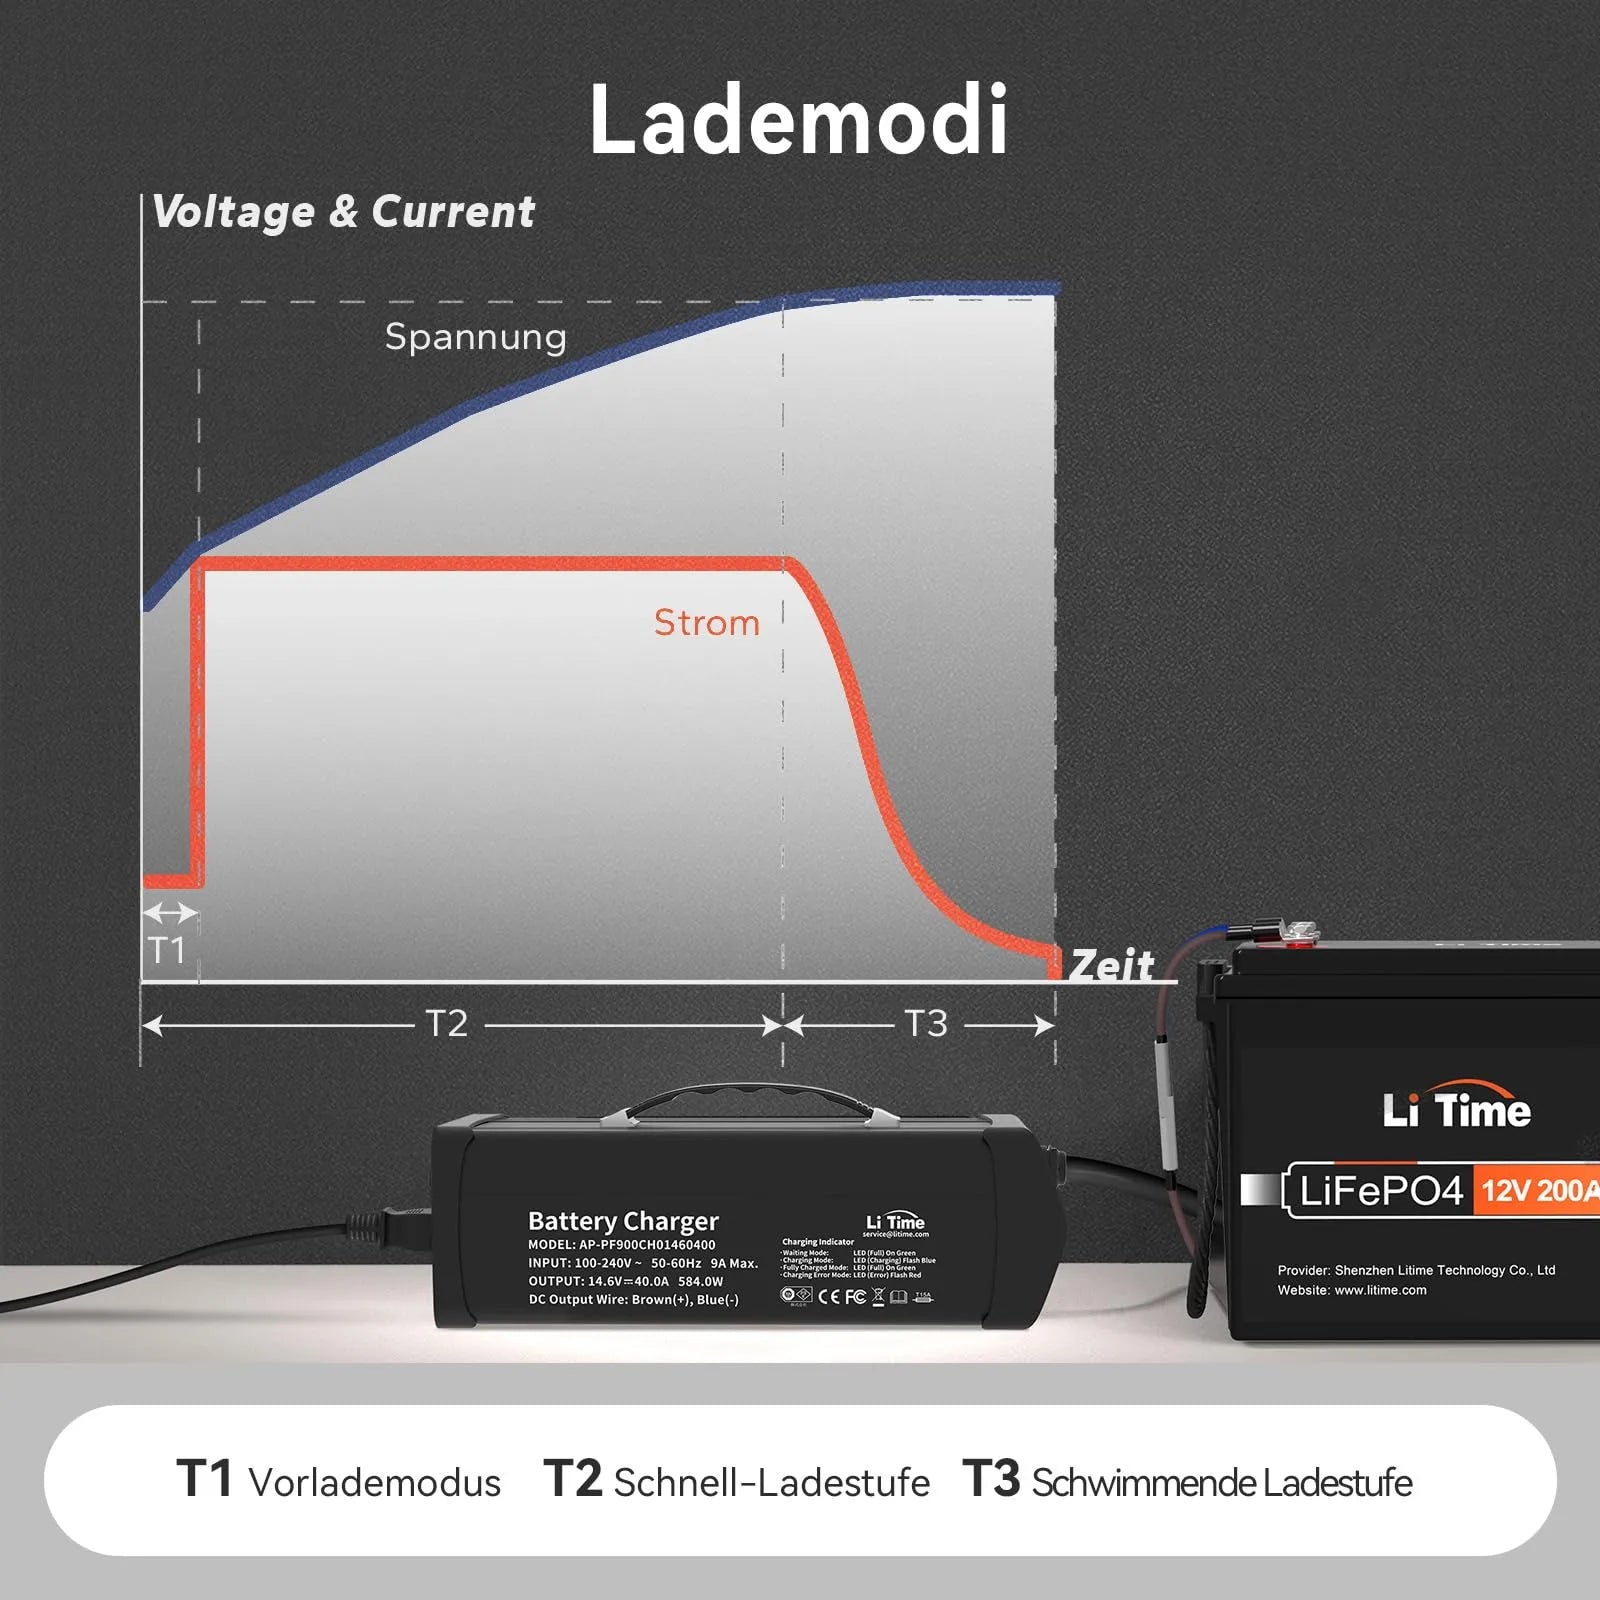 Chargeur de batterie lithium LiTime 14.6V 40A pour batterie lithium 12V LiFePO4